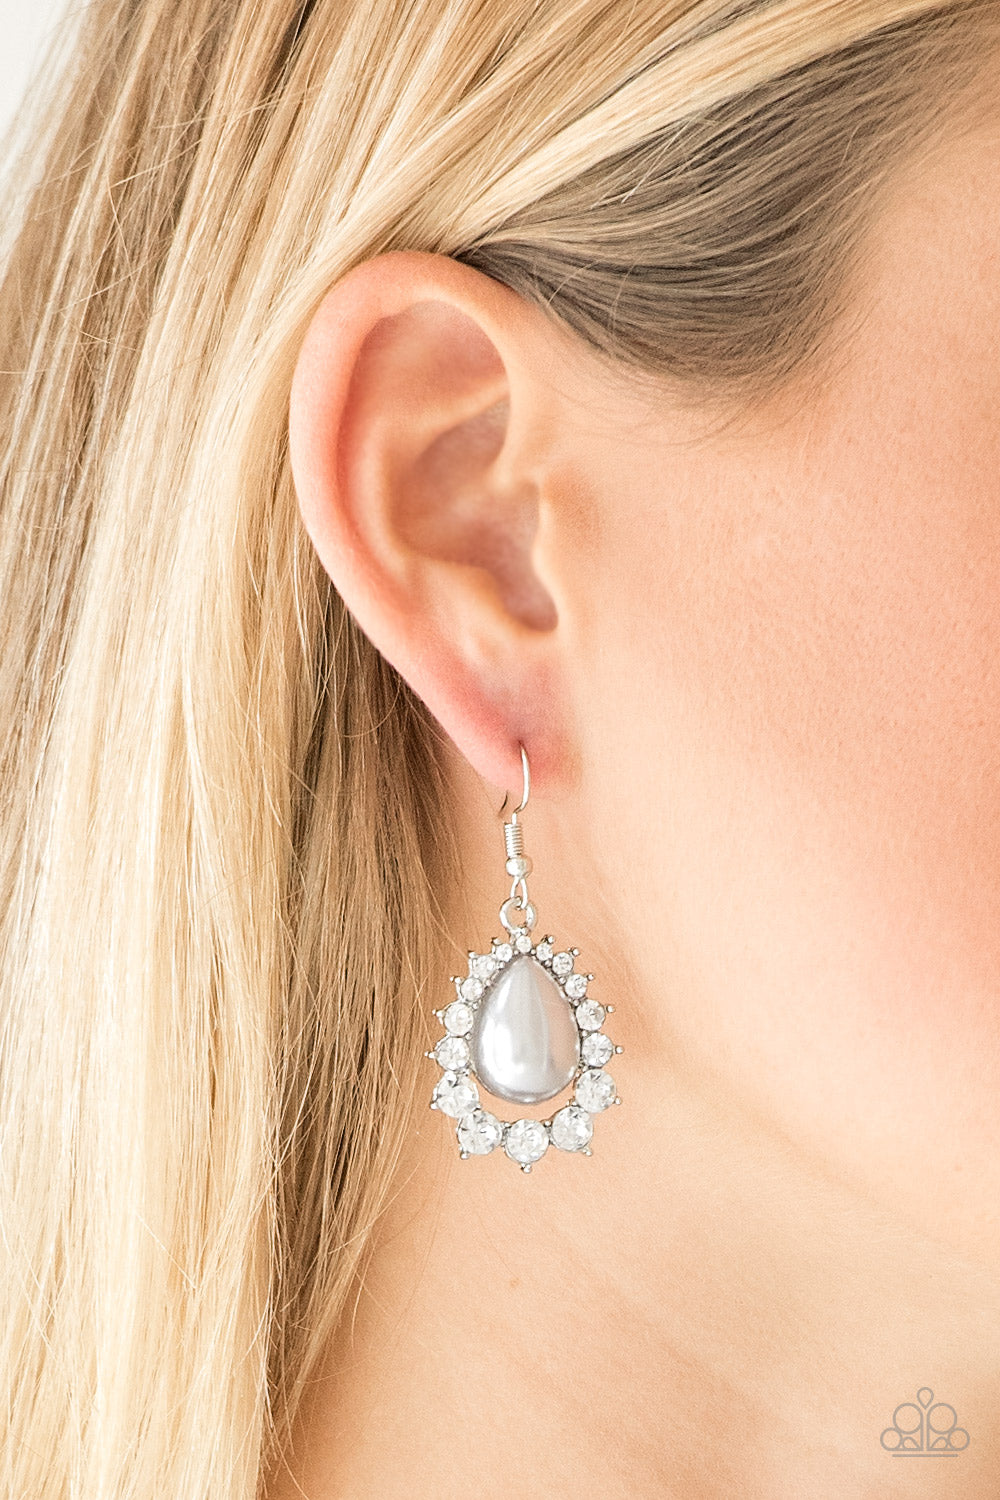 Regal Renewal - Silver pearl earrings